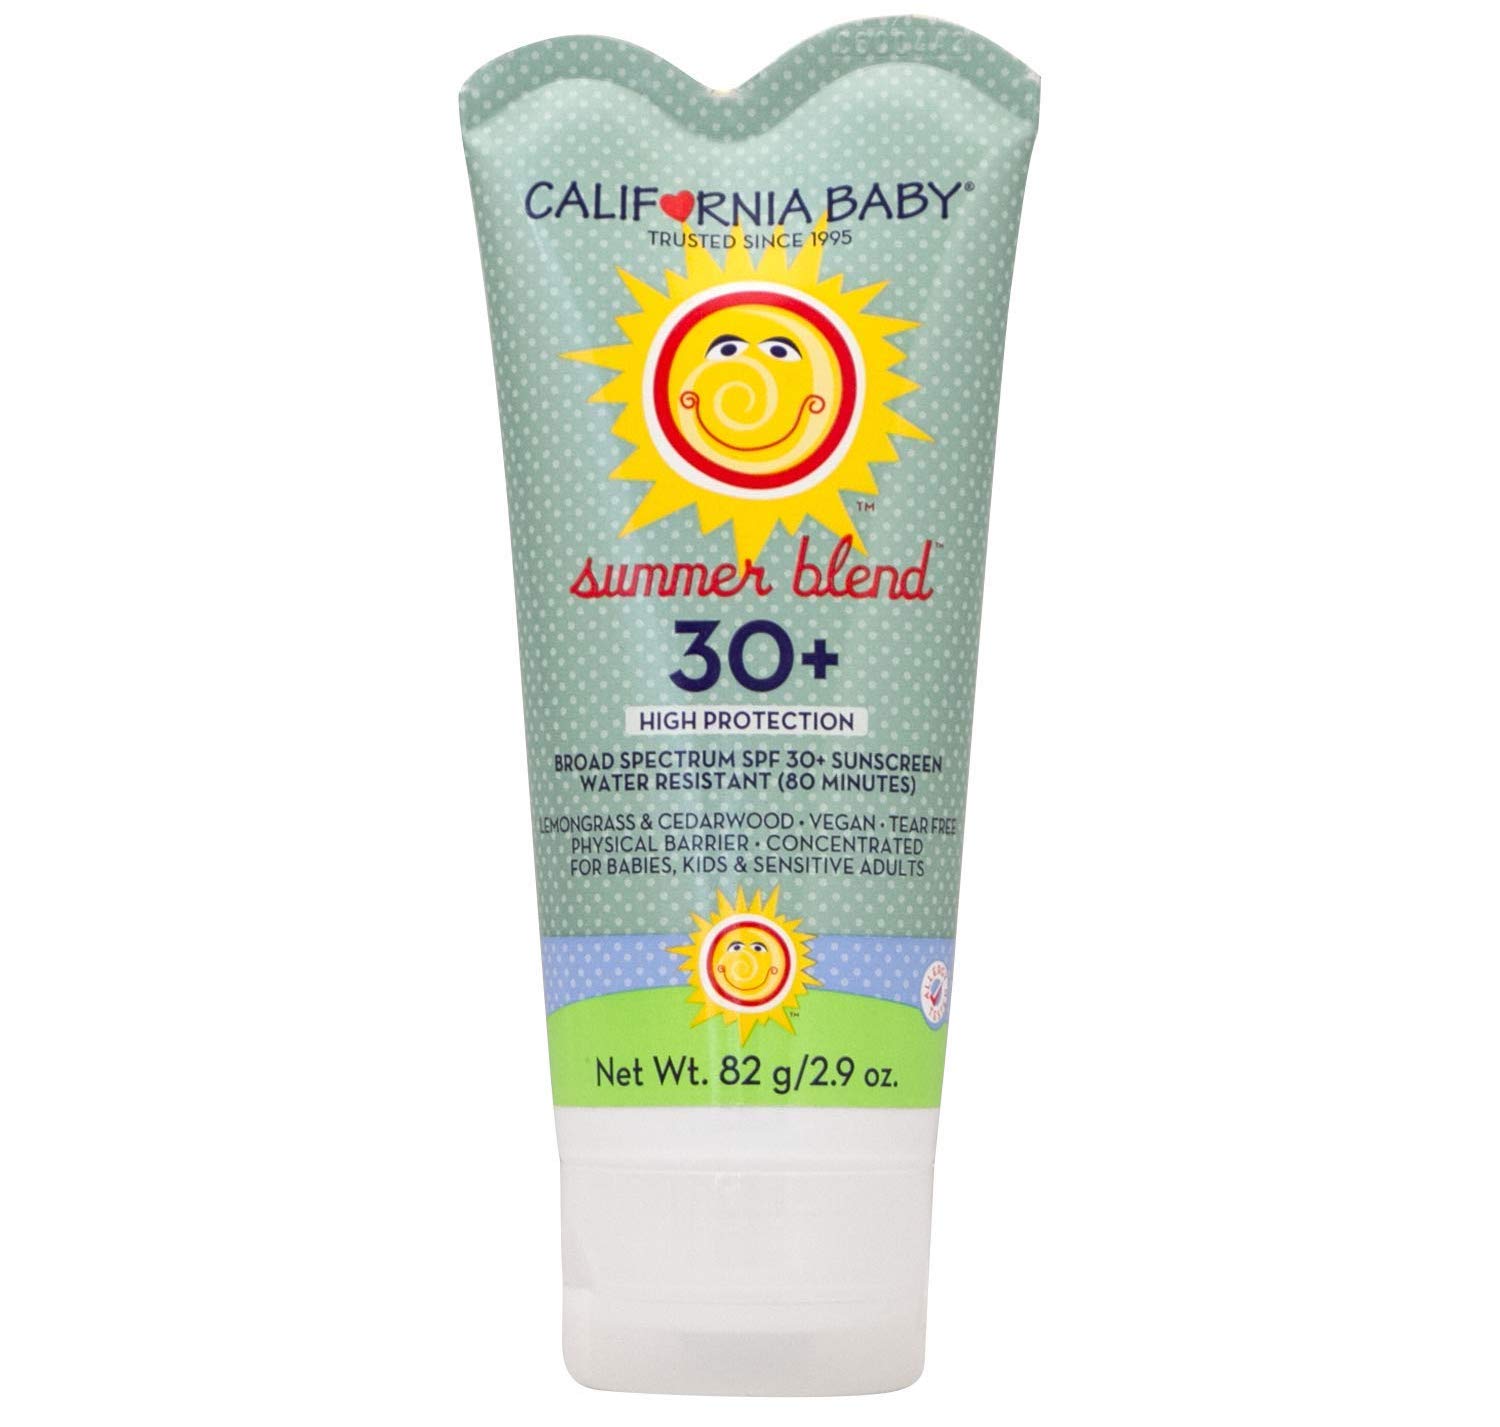 California Baby Face & Body Sunscreen Lotion SPF 30+